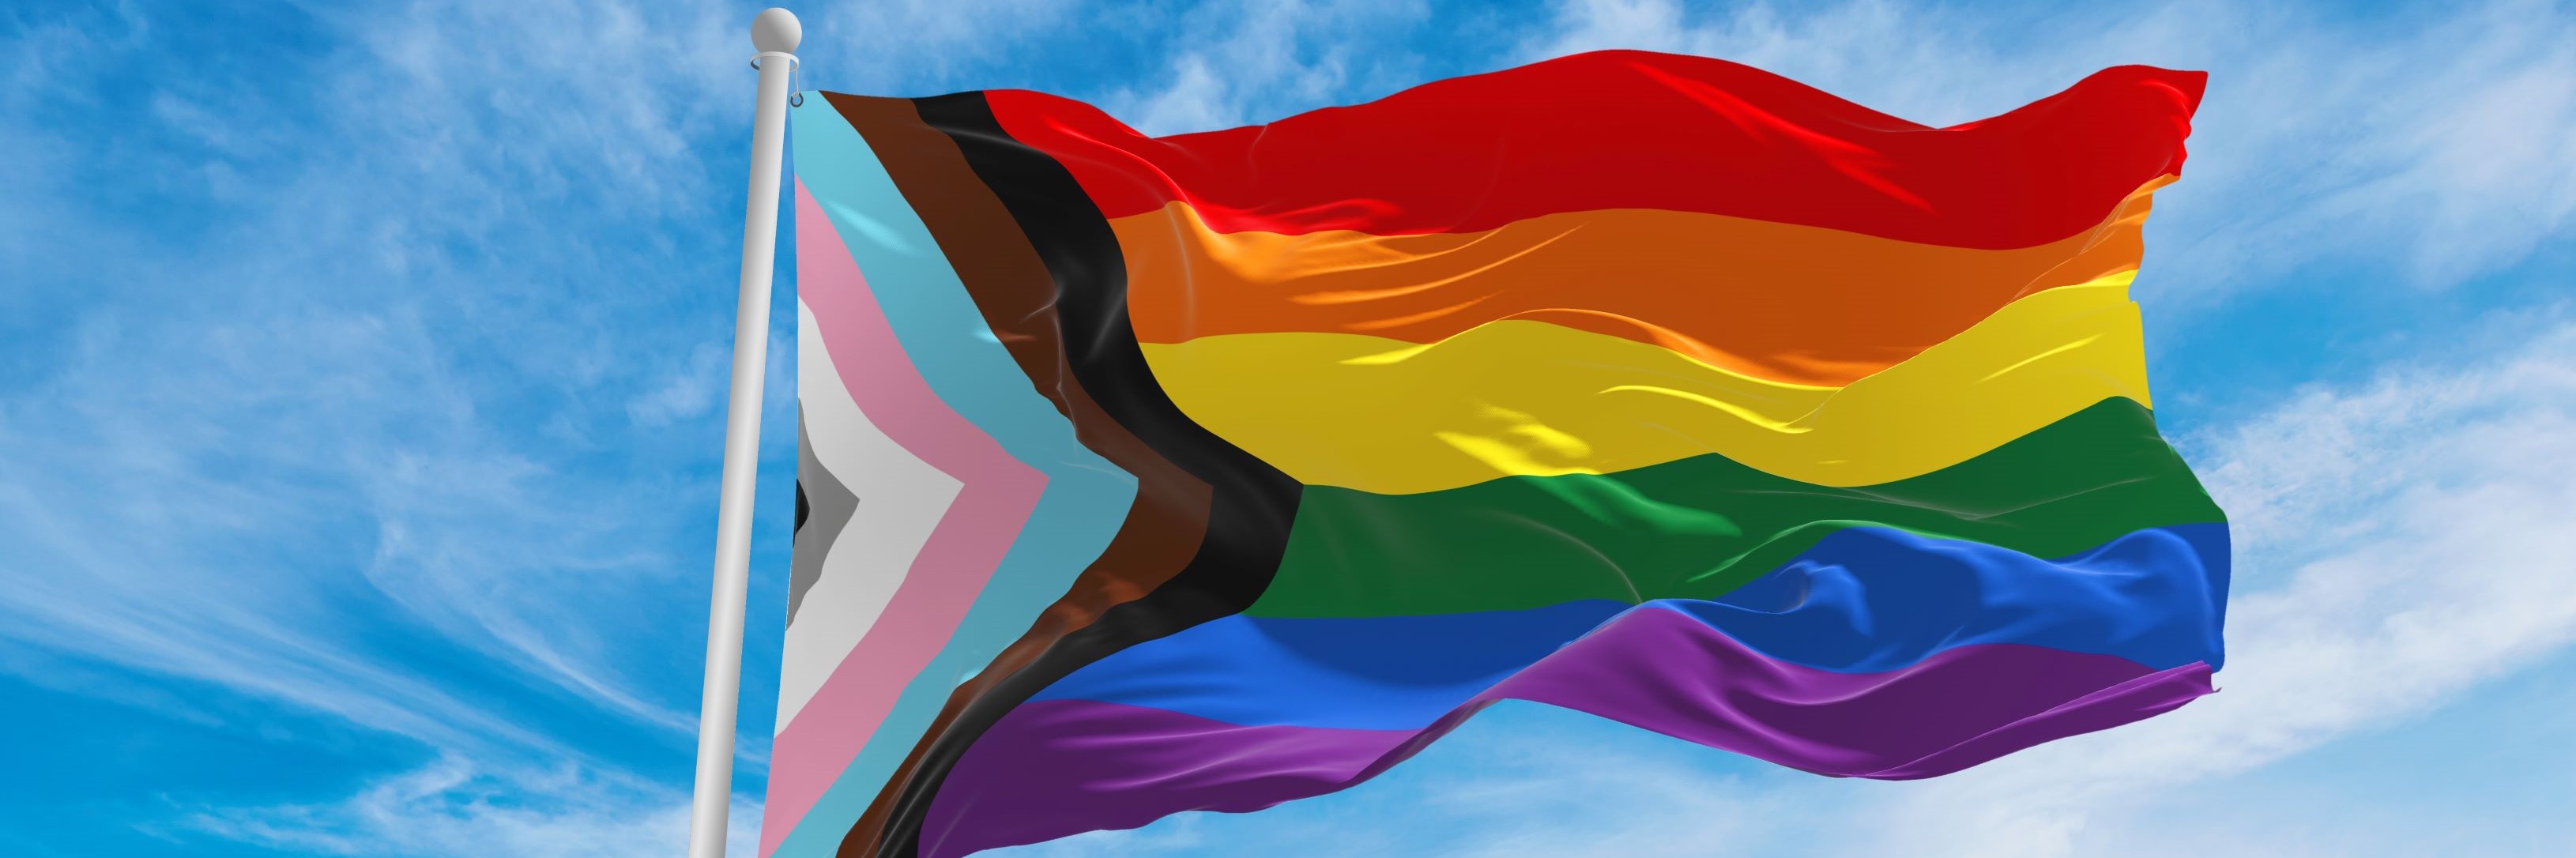 Staying-Informed-on-LGBTQ-Laws-banner.jpg